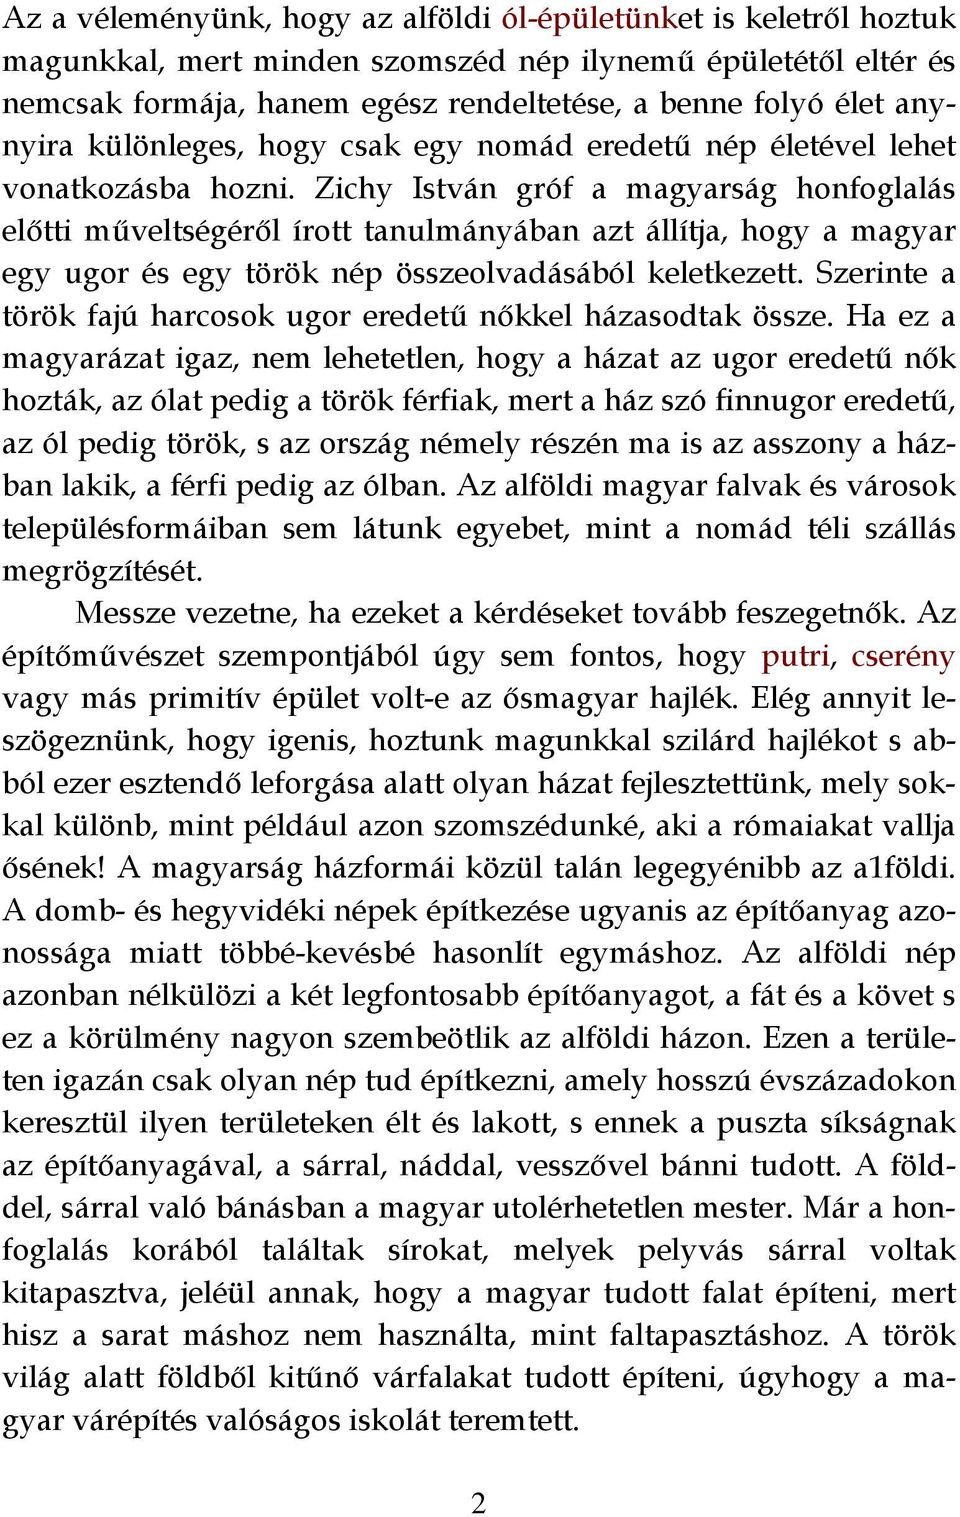 Zichy István gróf a magyarság honfoglalás előtti műveltségéről írott tanulmányában azt állítja, hogy a magyar egy ugor és egy török nép összeolvadásából keletkezett.